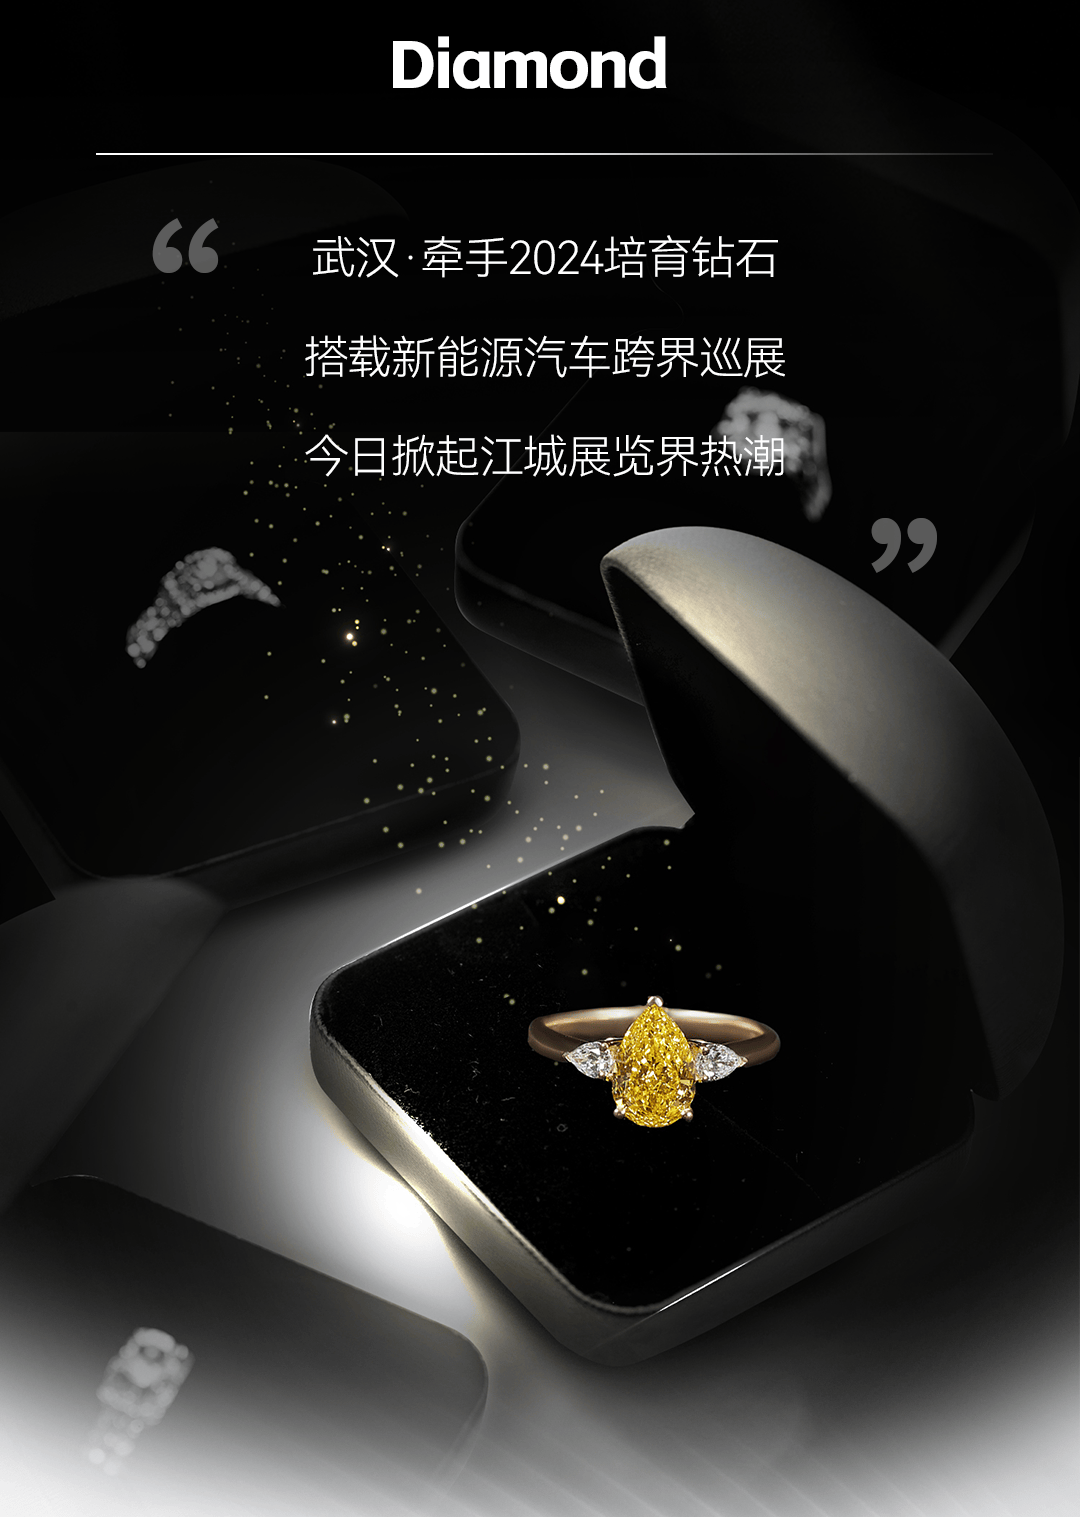 样样惊爆!今天,武汉这个钻石展览美出新高度!